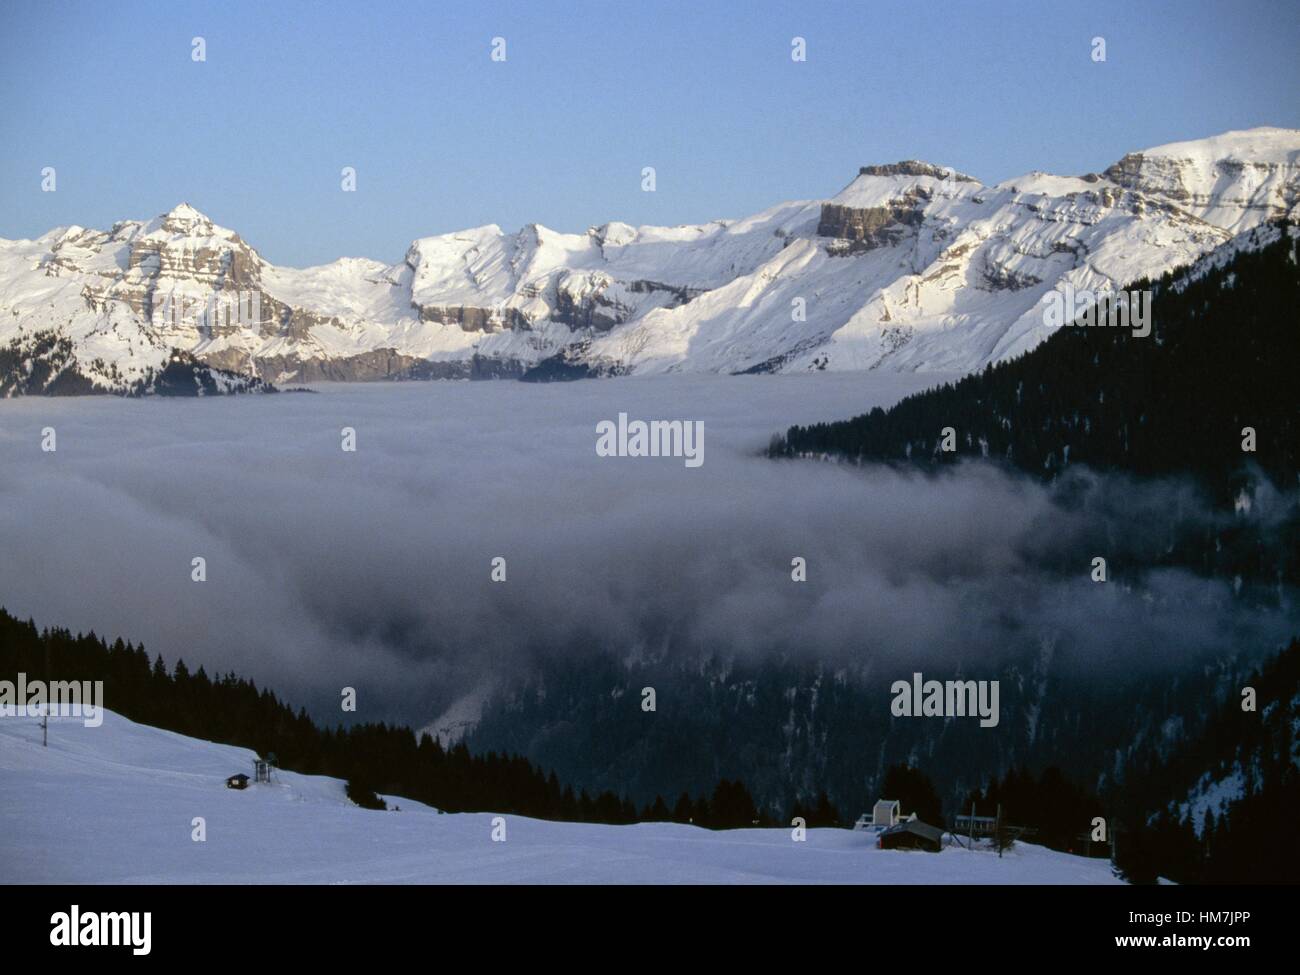 Cirque du Fer a Cheval, schneebedeckten Massivs und niedrige Wolken, Sixt-Fer-pro-Cheval, Auvergne-Rhone-Alpes, Frankreich. Stockfoto